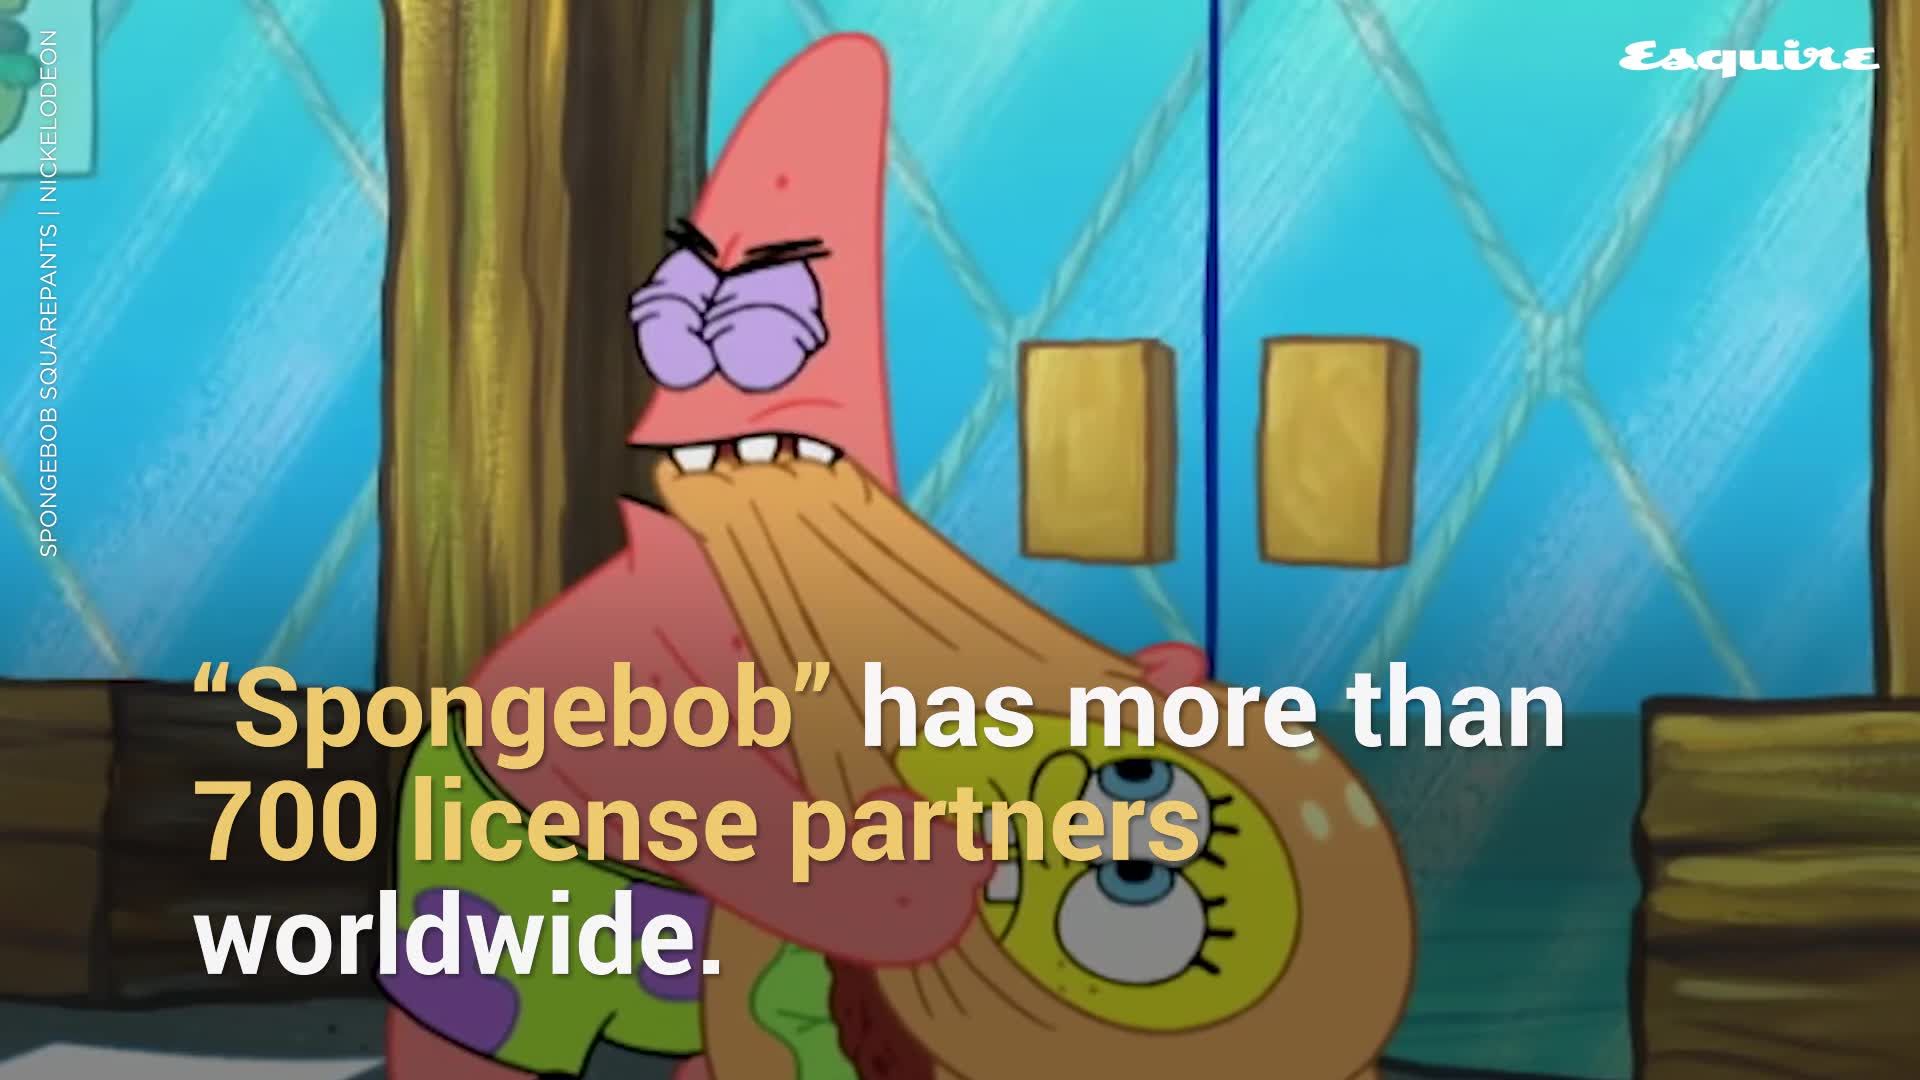 is spongebob gay yahoo